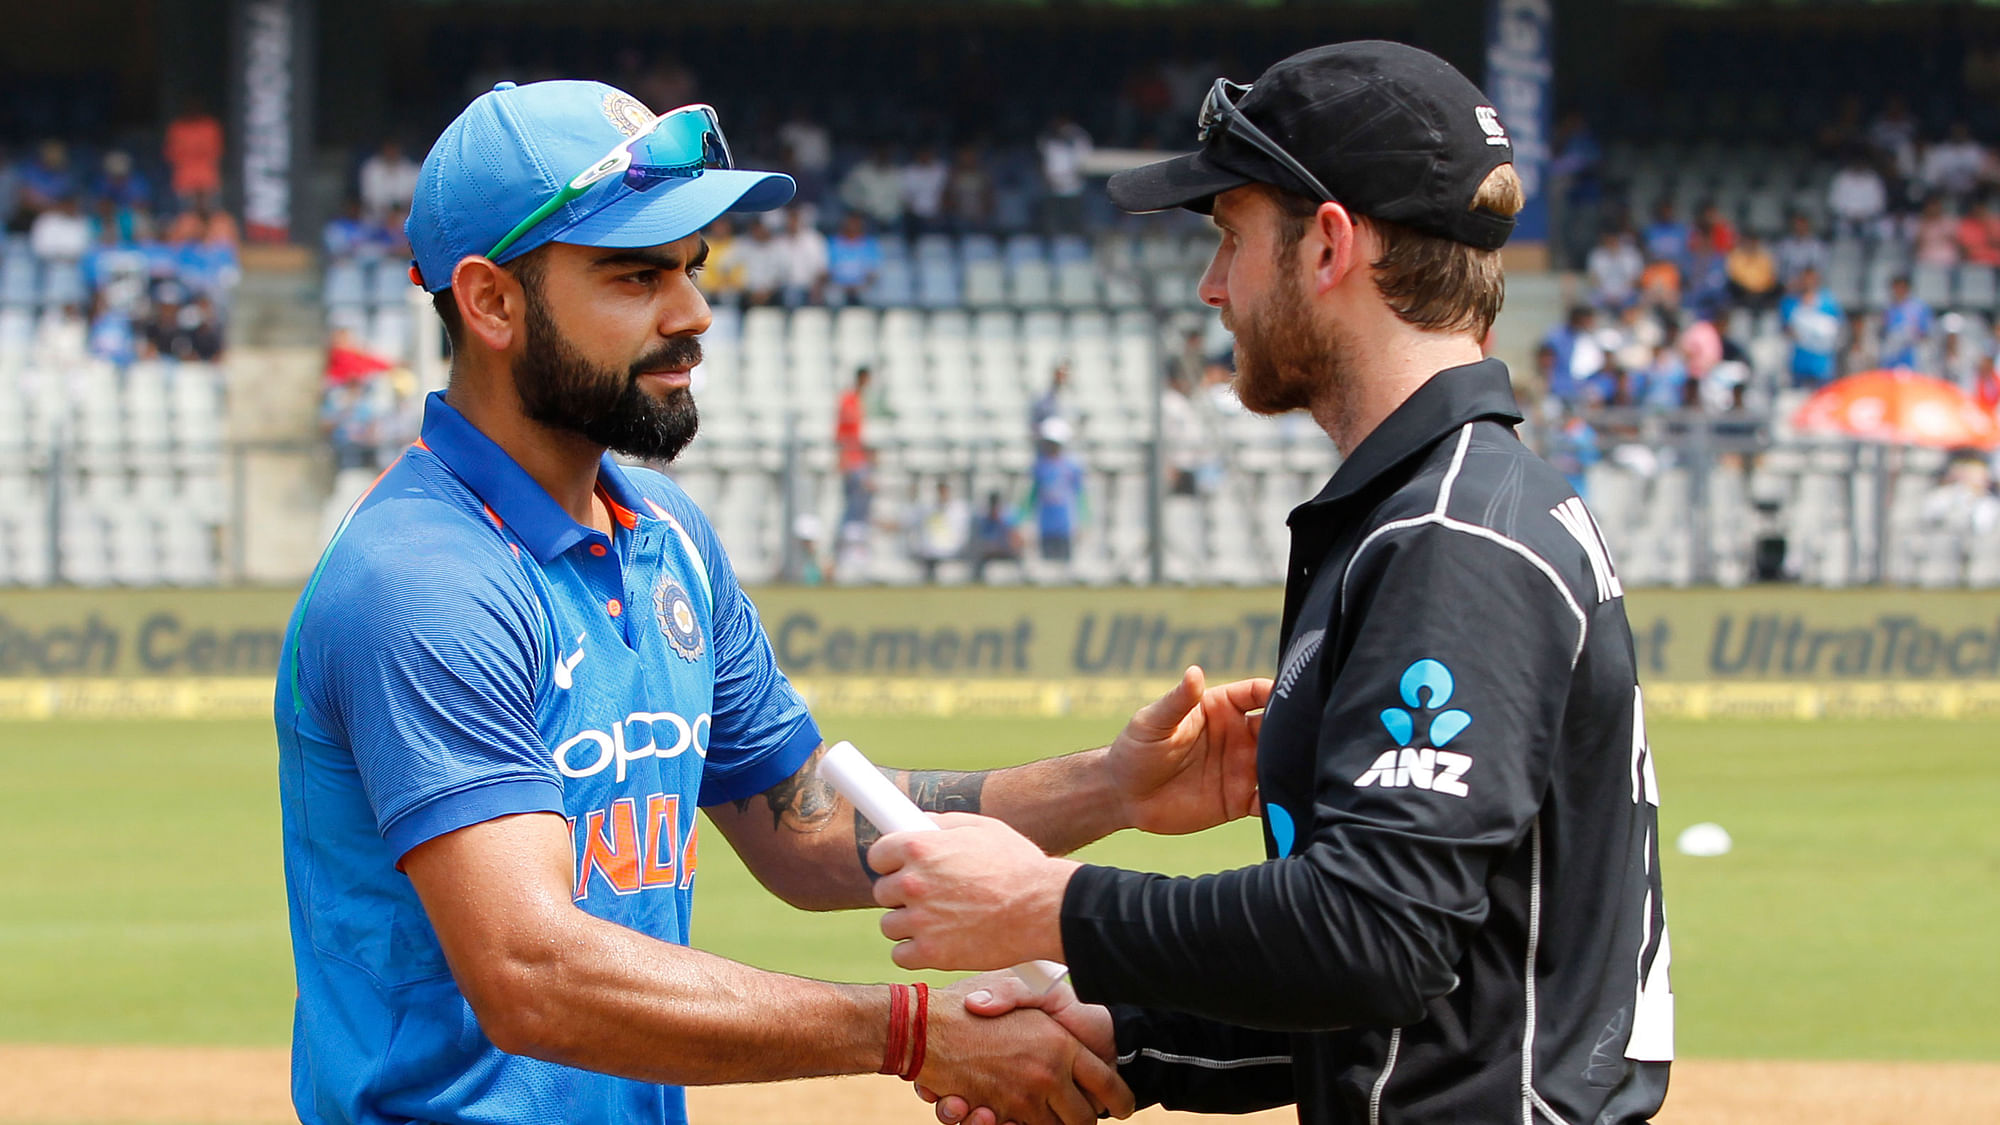 India vs New Zealand 1st ODI Live Score Updates